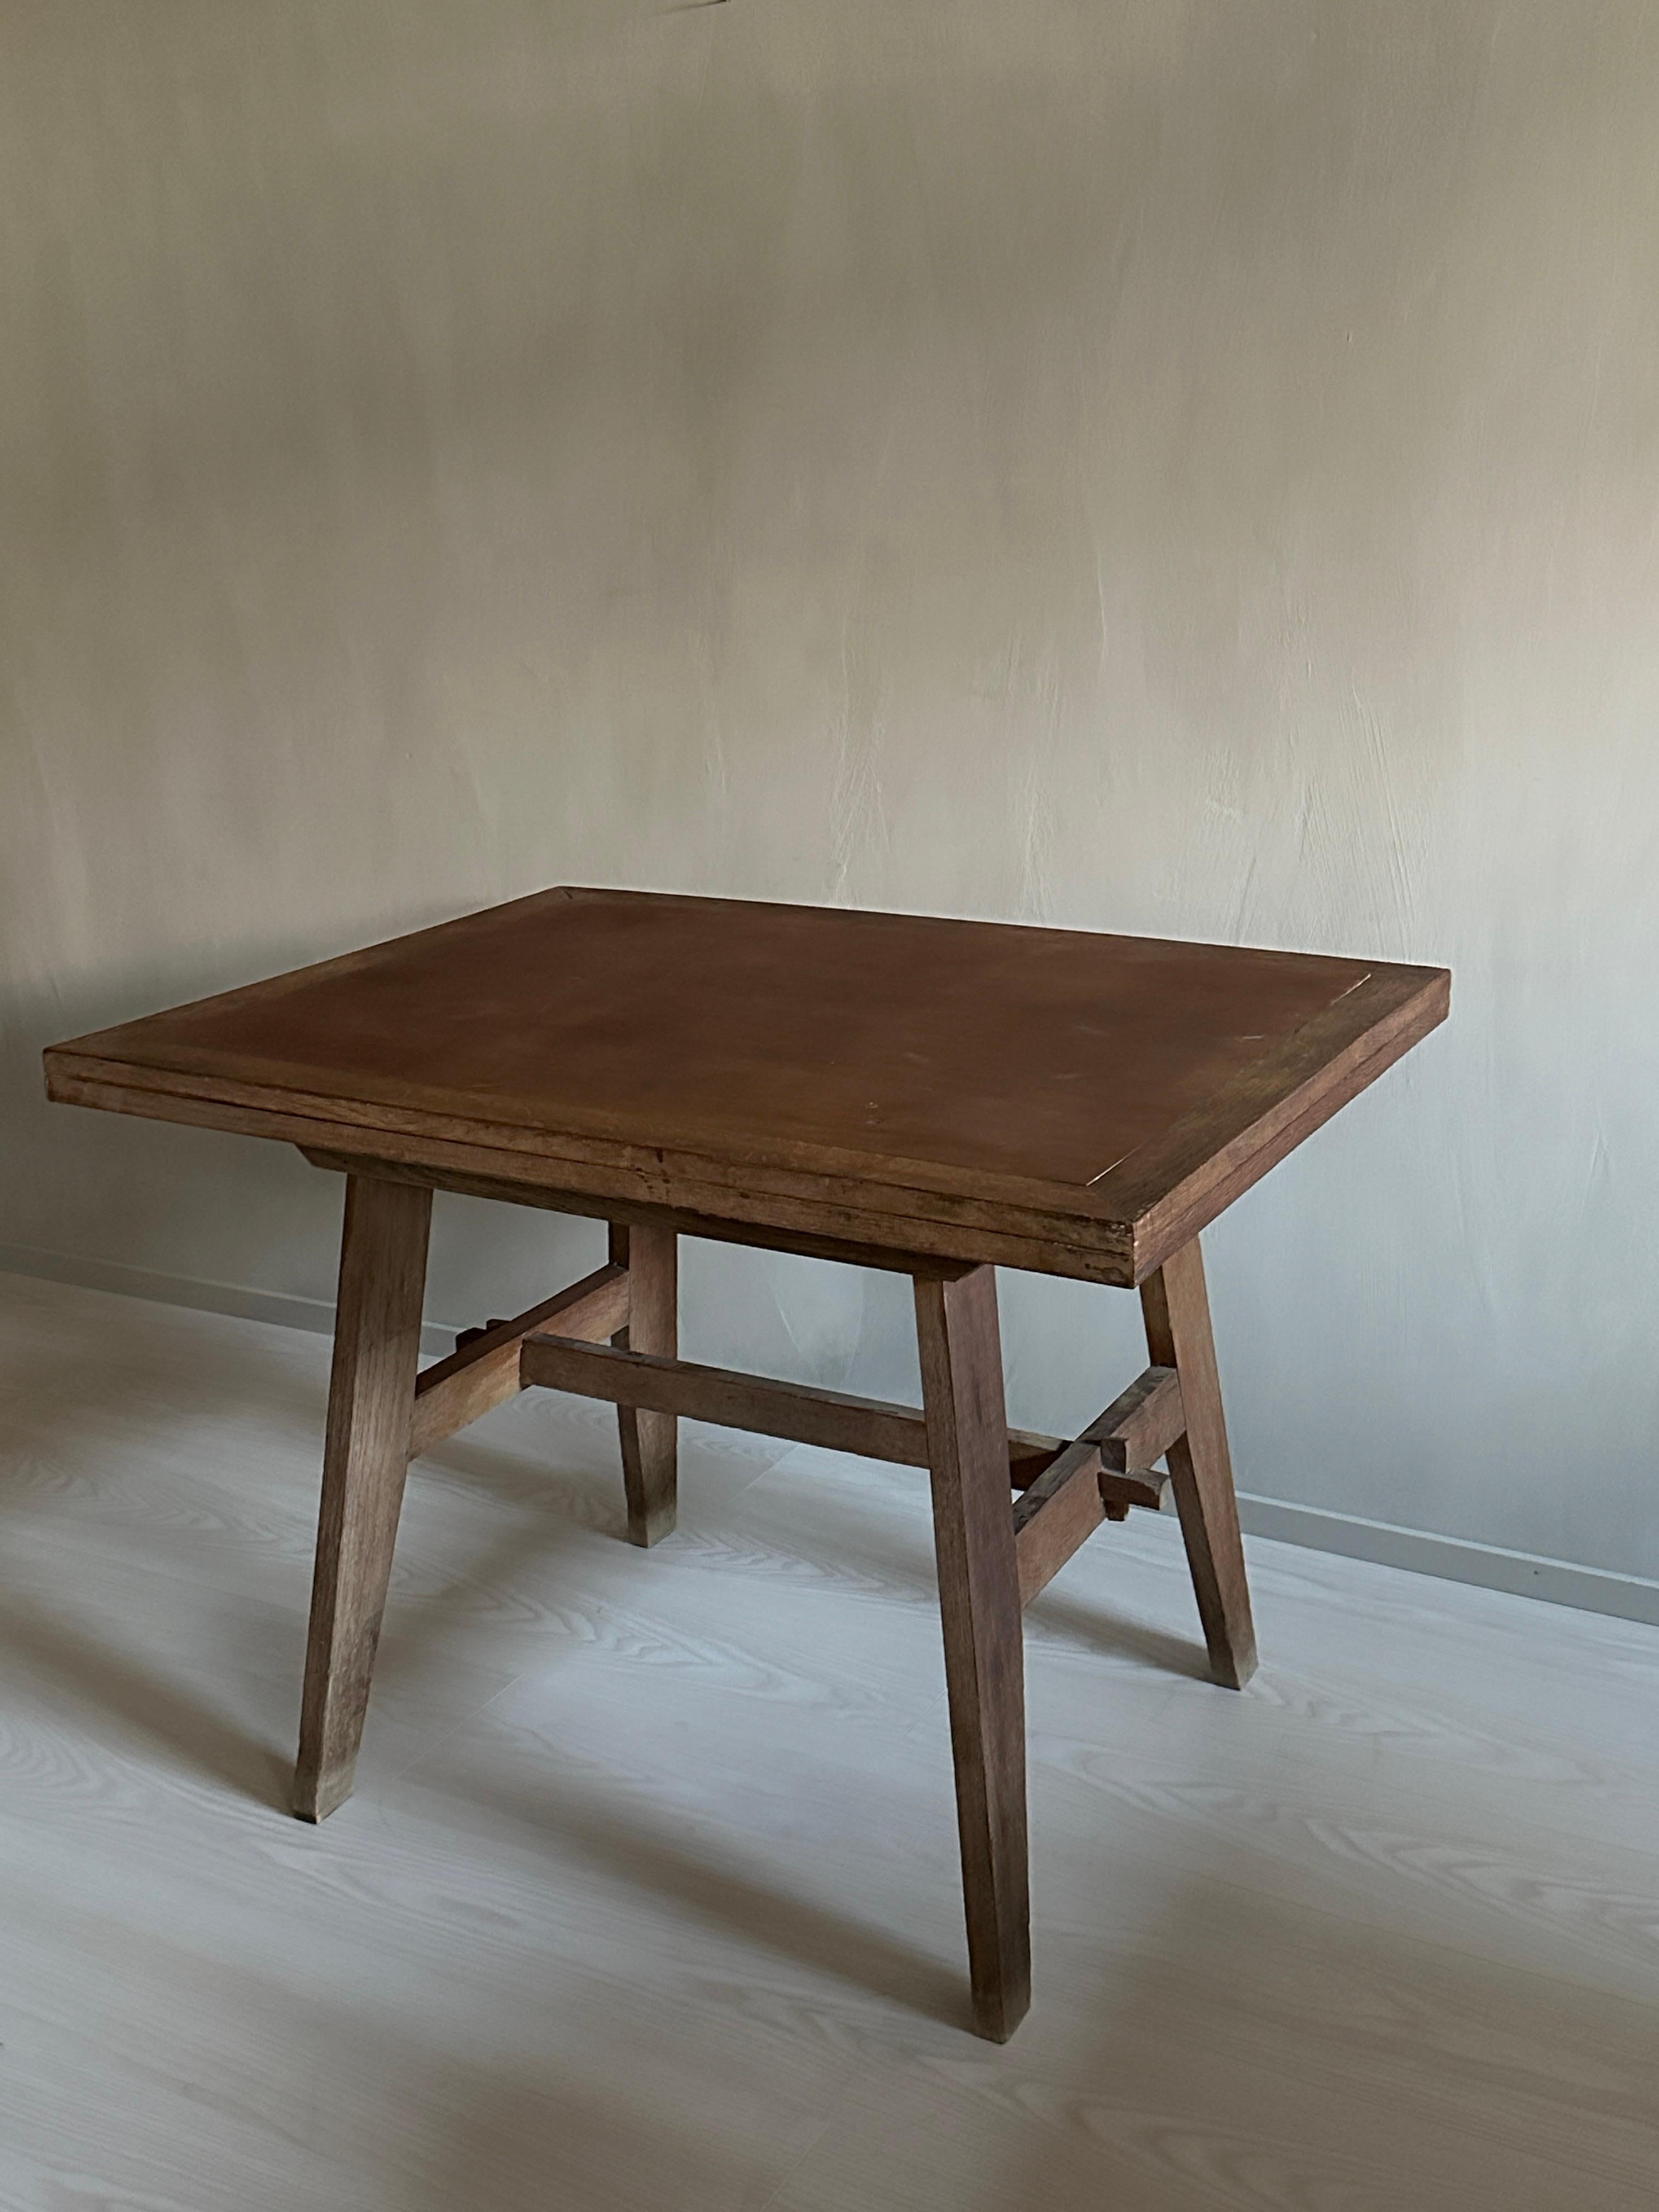 Une belle table de cuisine en chêne conçue par René Gabriel, France 1945.

René Gabriel s'est mis au service de la Reconstruction française dès les années 1940. Il a conçu des meubles destinés à être produits en grande série, en utilisant des